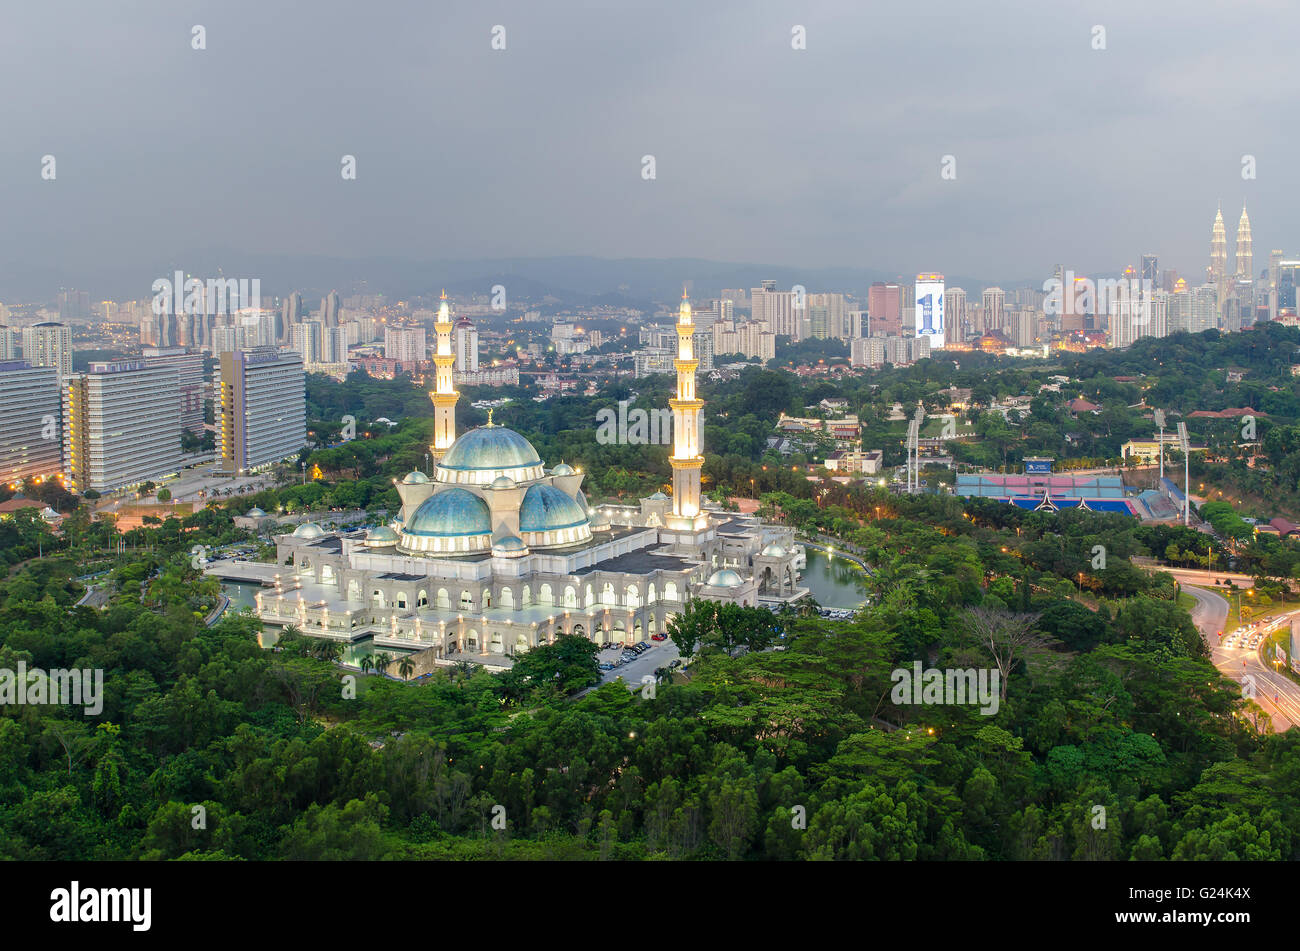 Mosquée du terriroire fédéral au crépuscule, Kuala Lumpur, Malaisie Banque D'Images